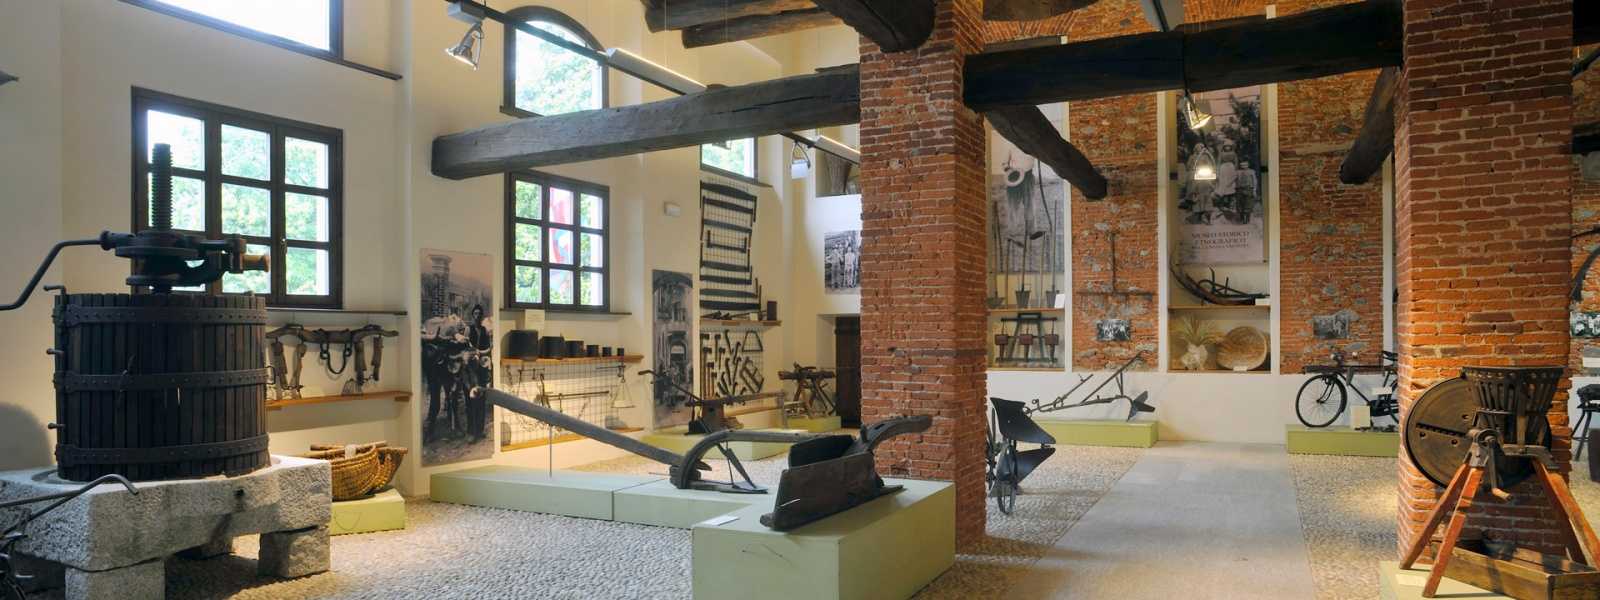 Museo storico etnografico della bassa Valsesia